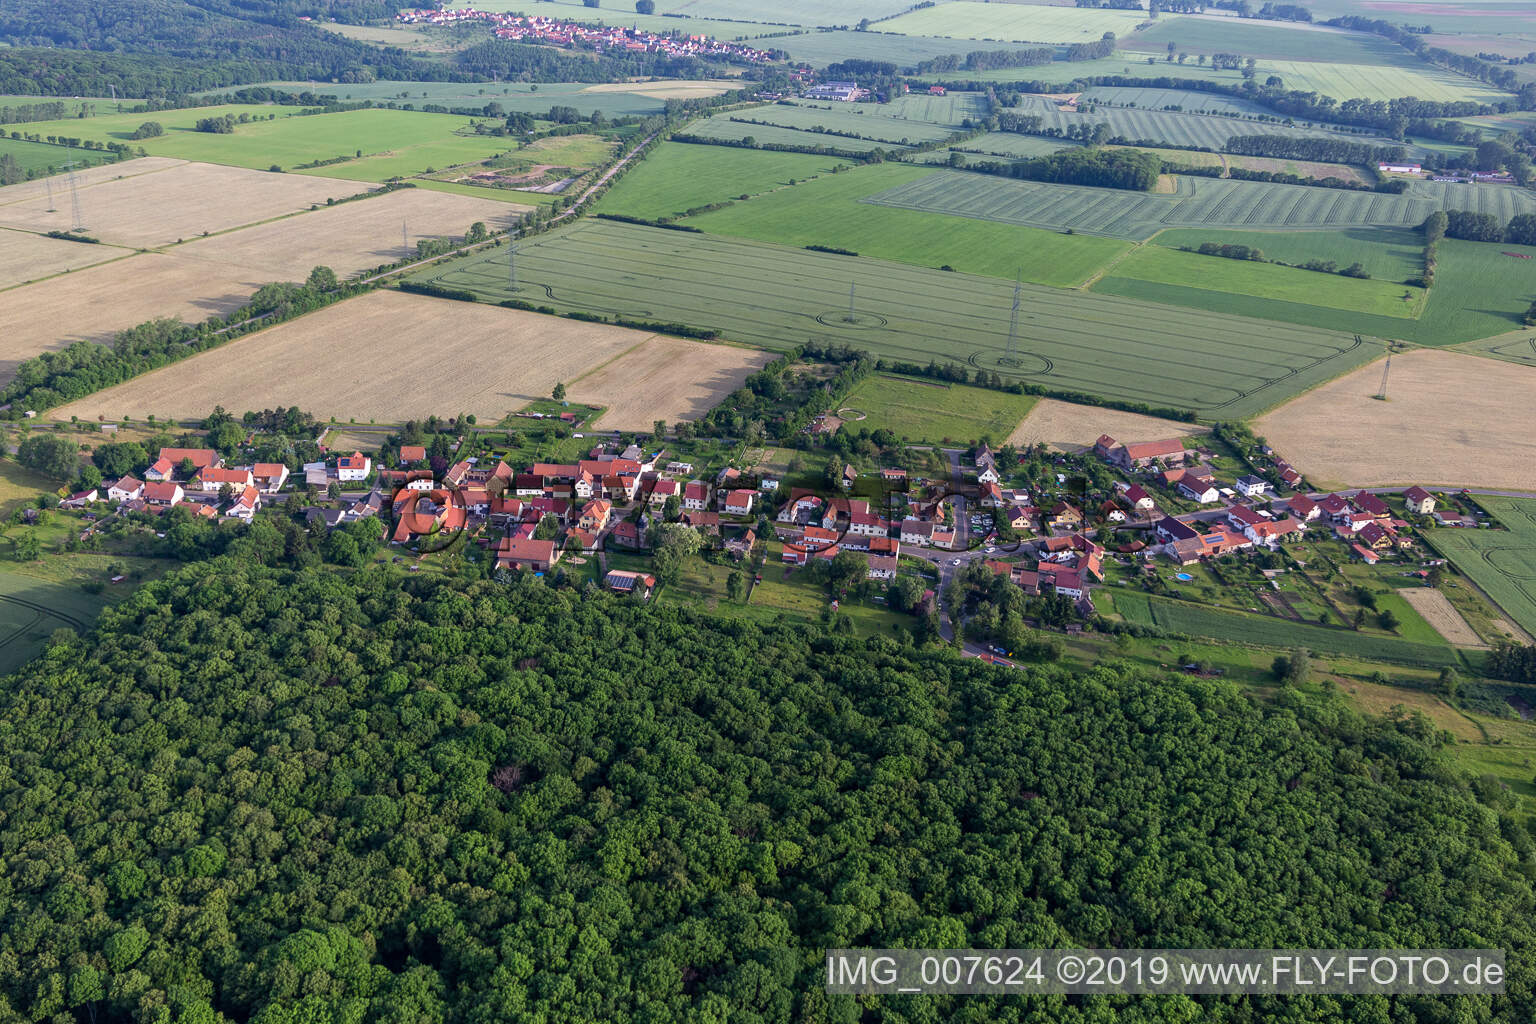 Vue aérienne de Weingarten dans le département Thuringe, Allemagne